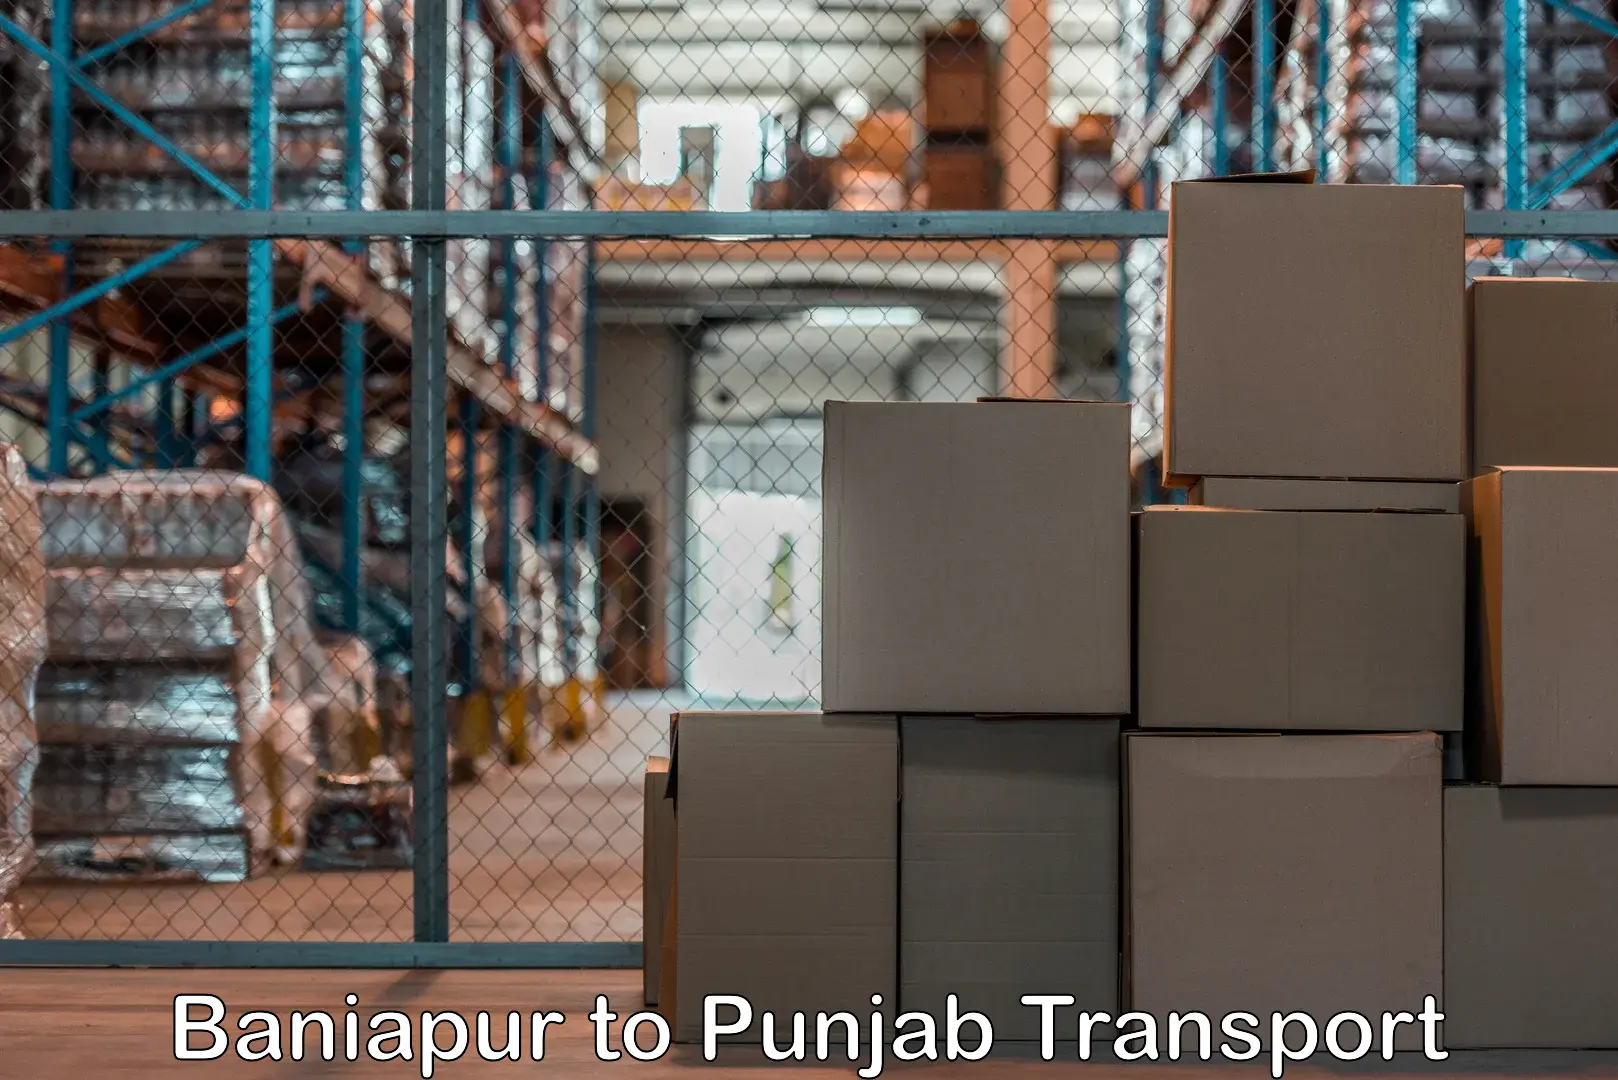 Land transport services Baniapur to Zirakpur